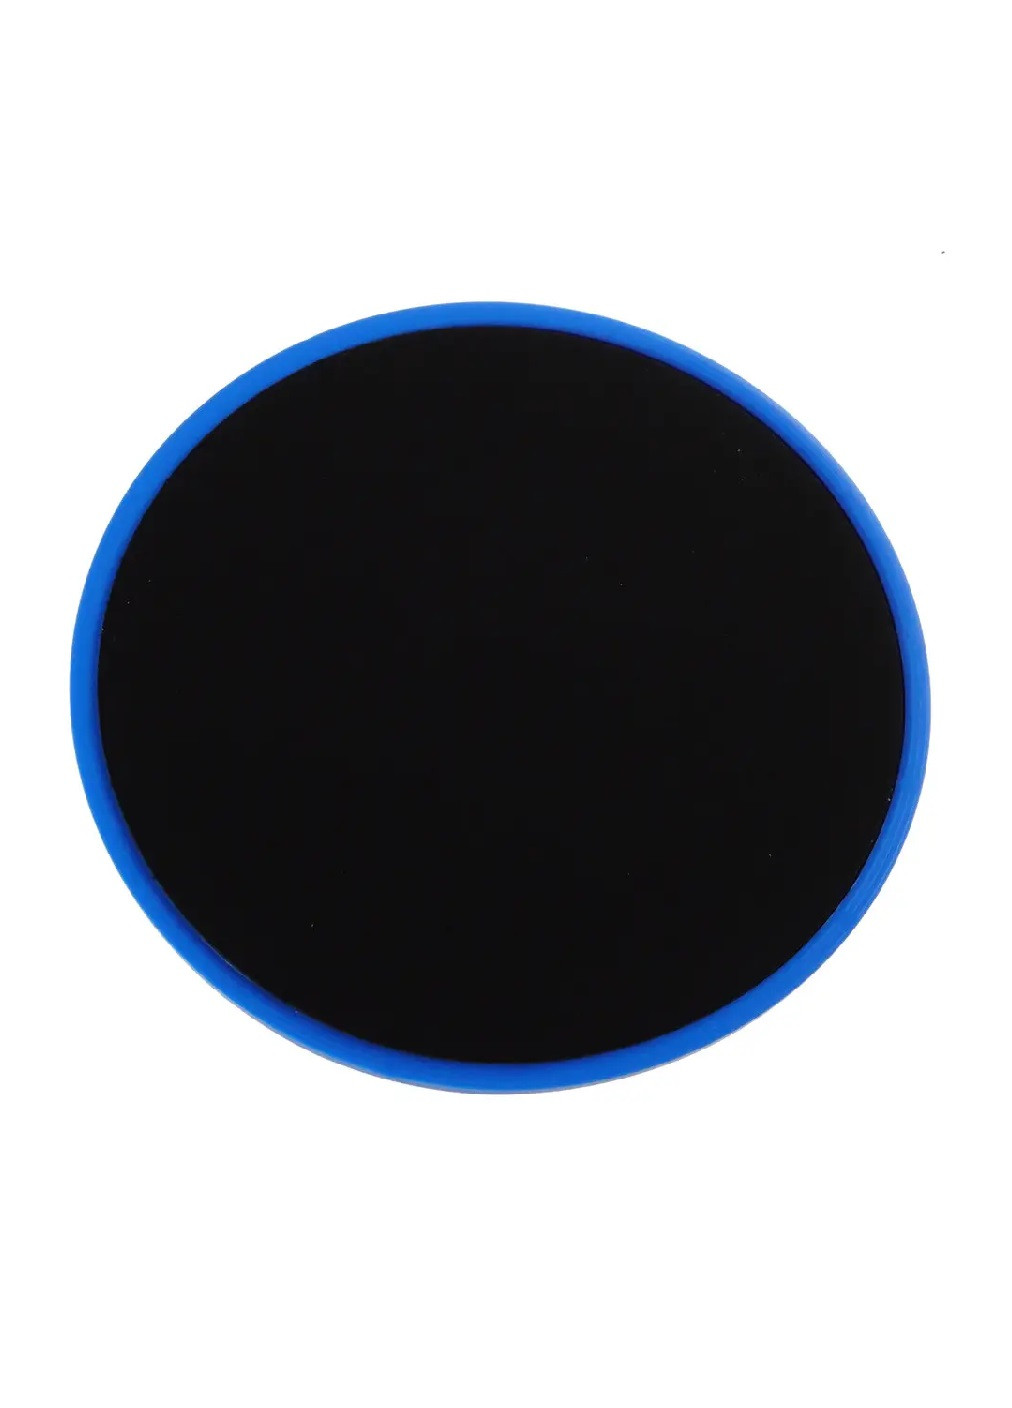 Набір глайдинг дисків тренажерів для фітнесу тренувань ковзання 2 шт. (473878-Prob) Сині з чорним Unbranded (256704793)